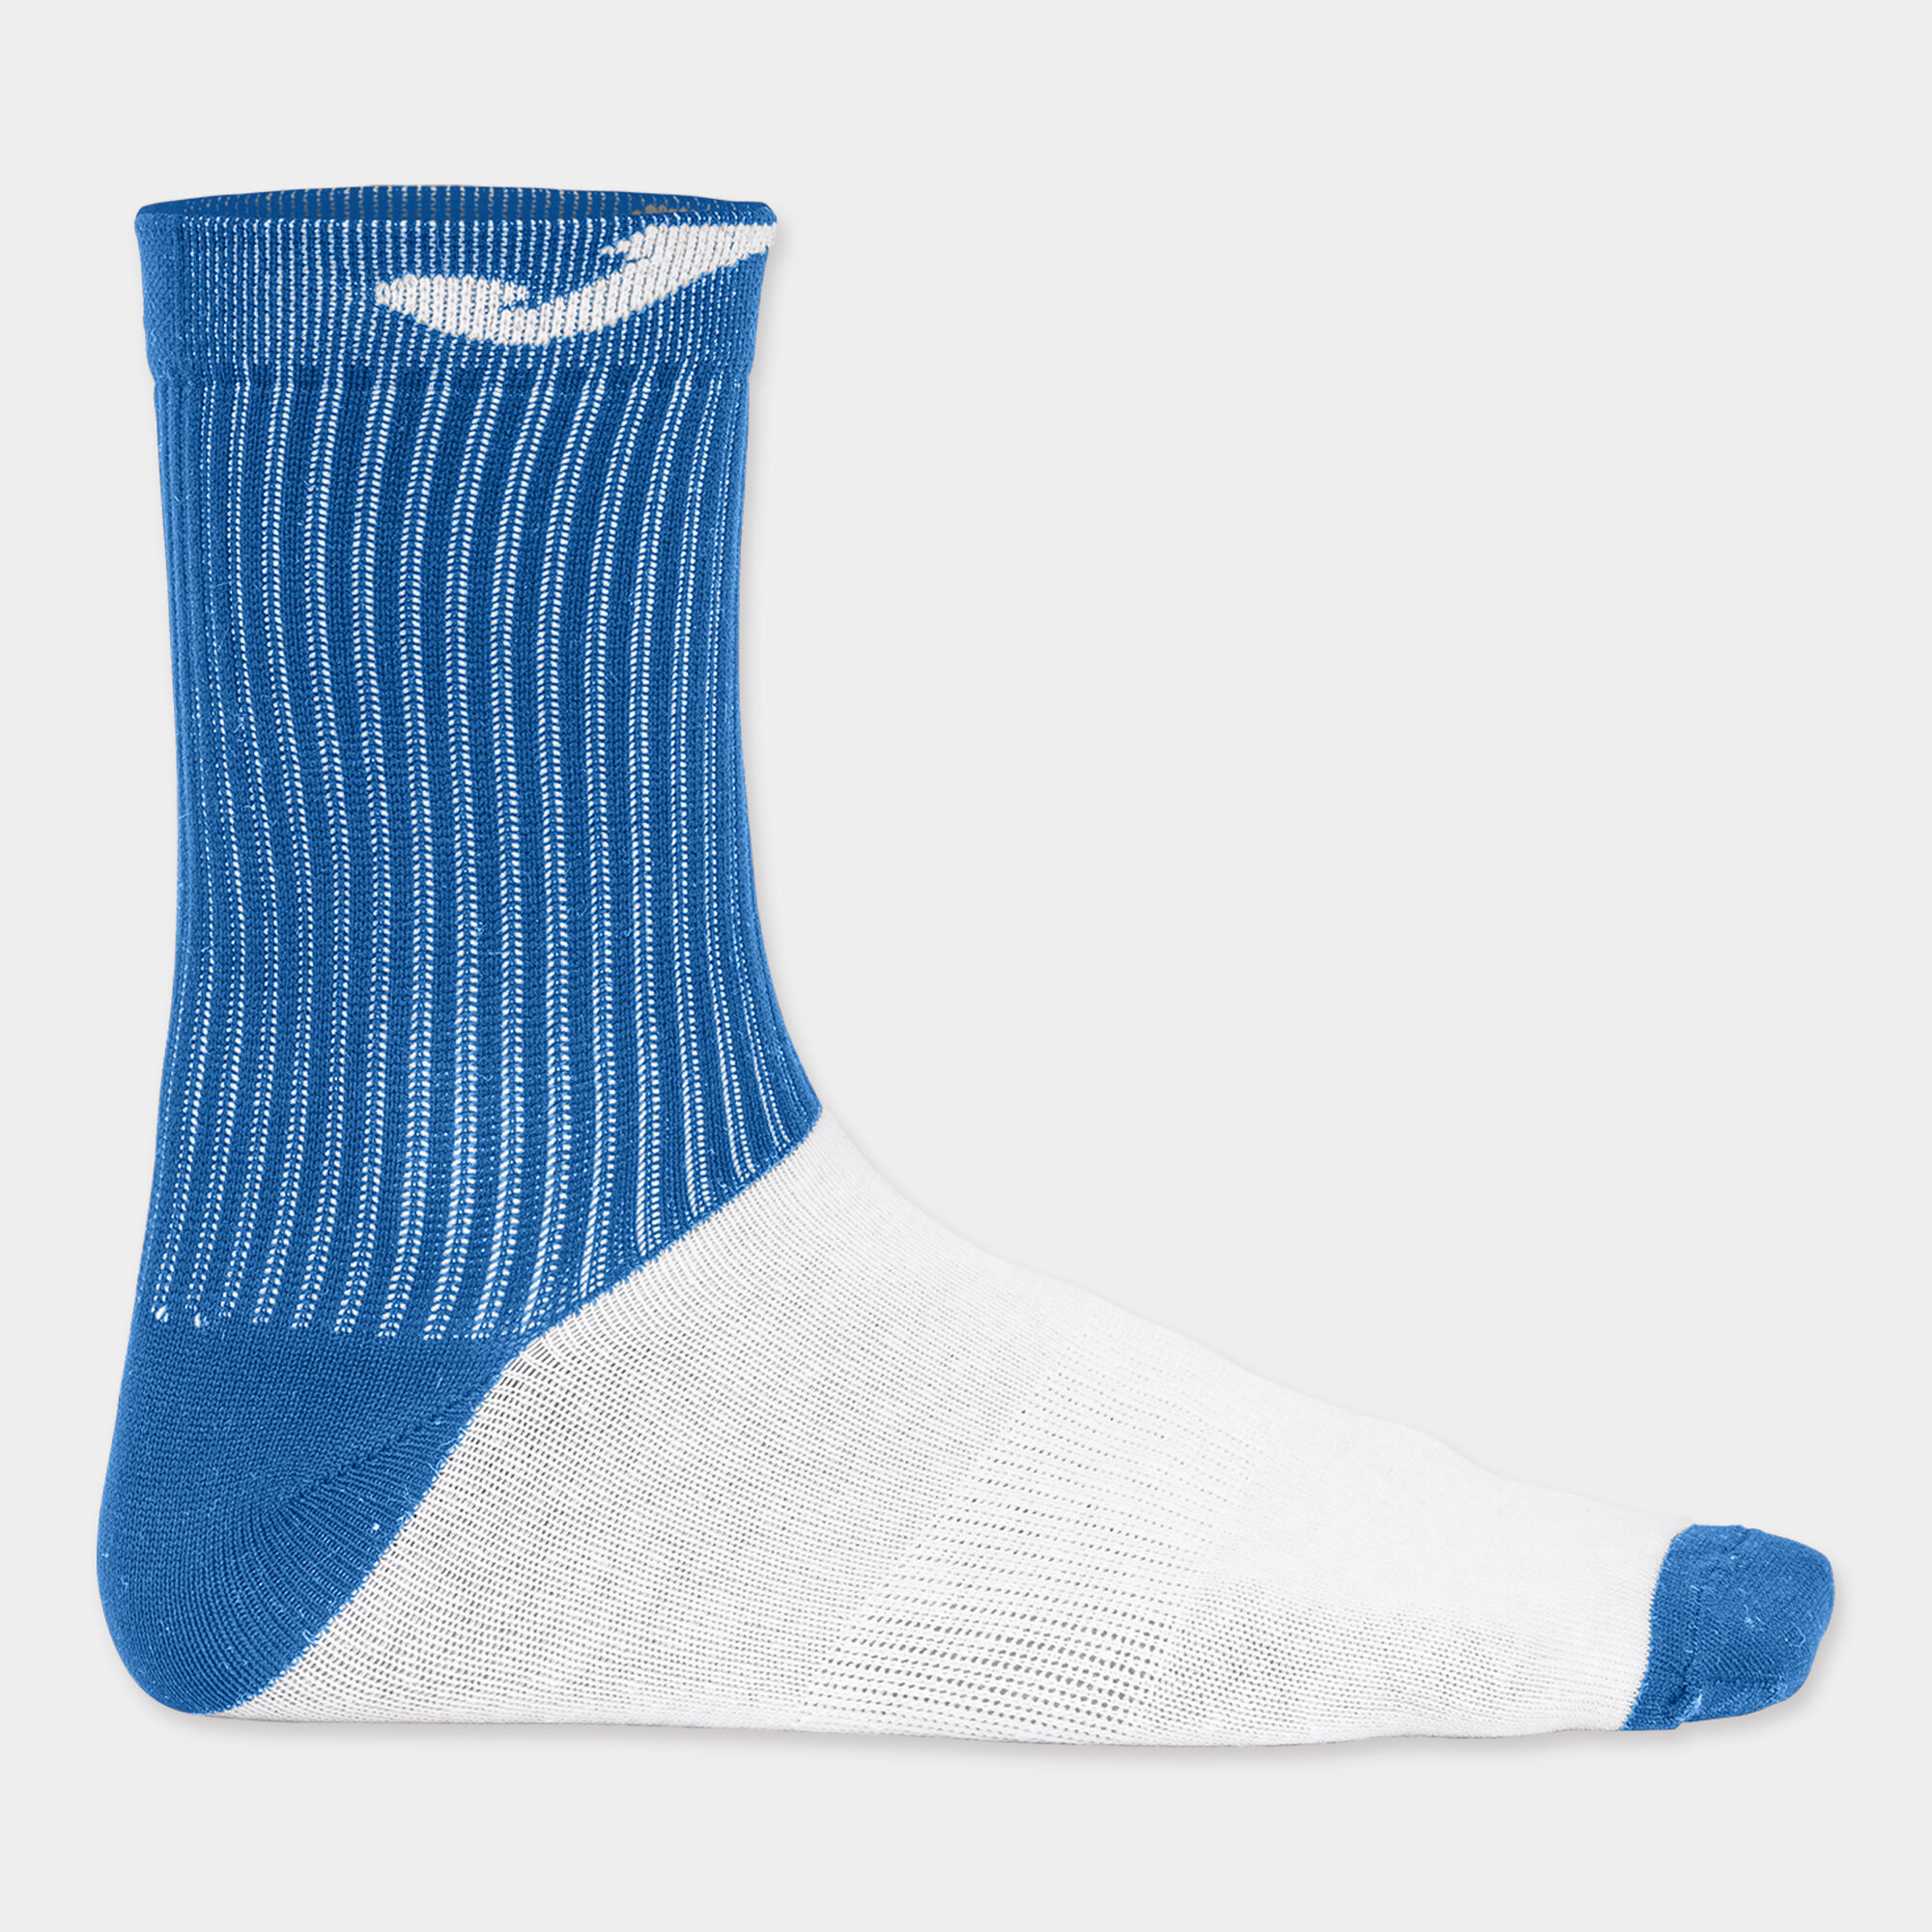 Socken unisex königsblau